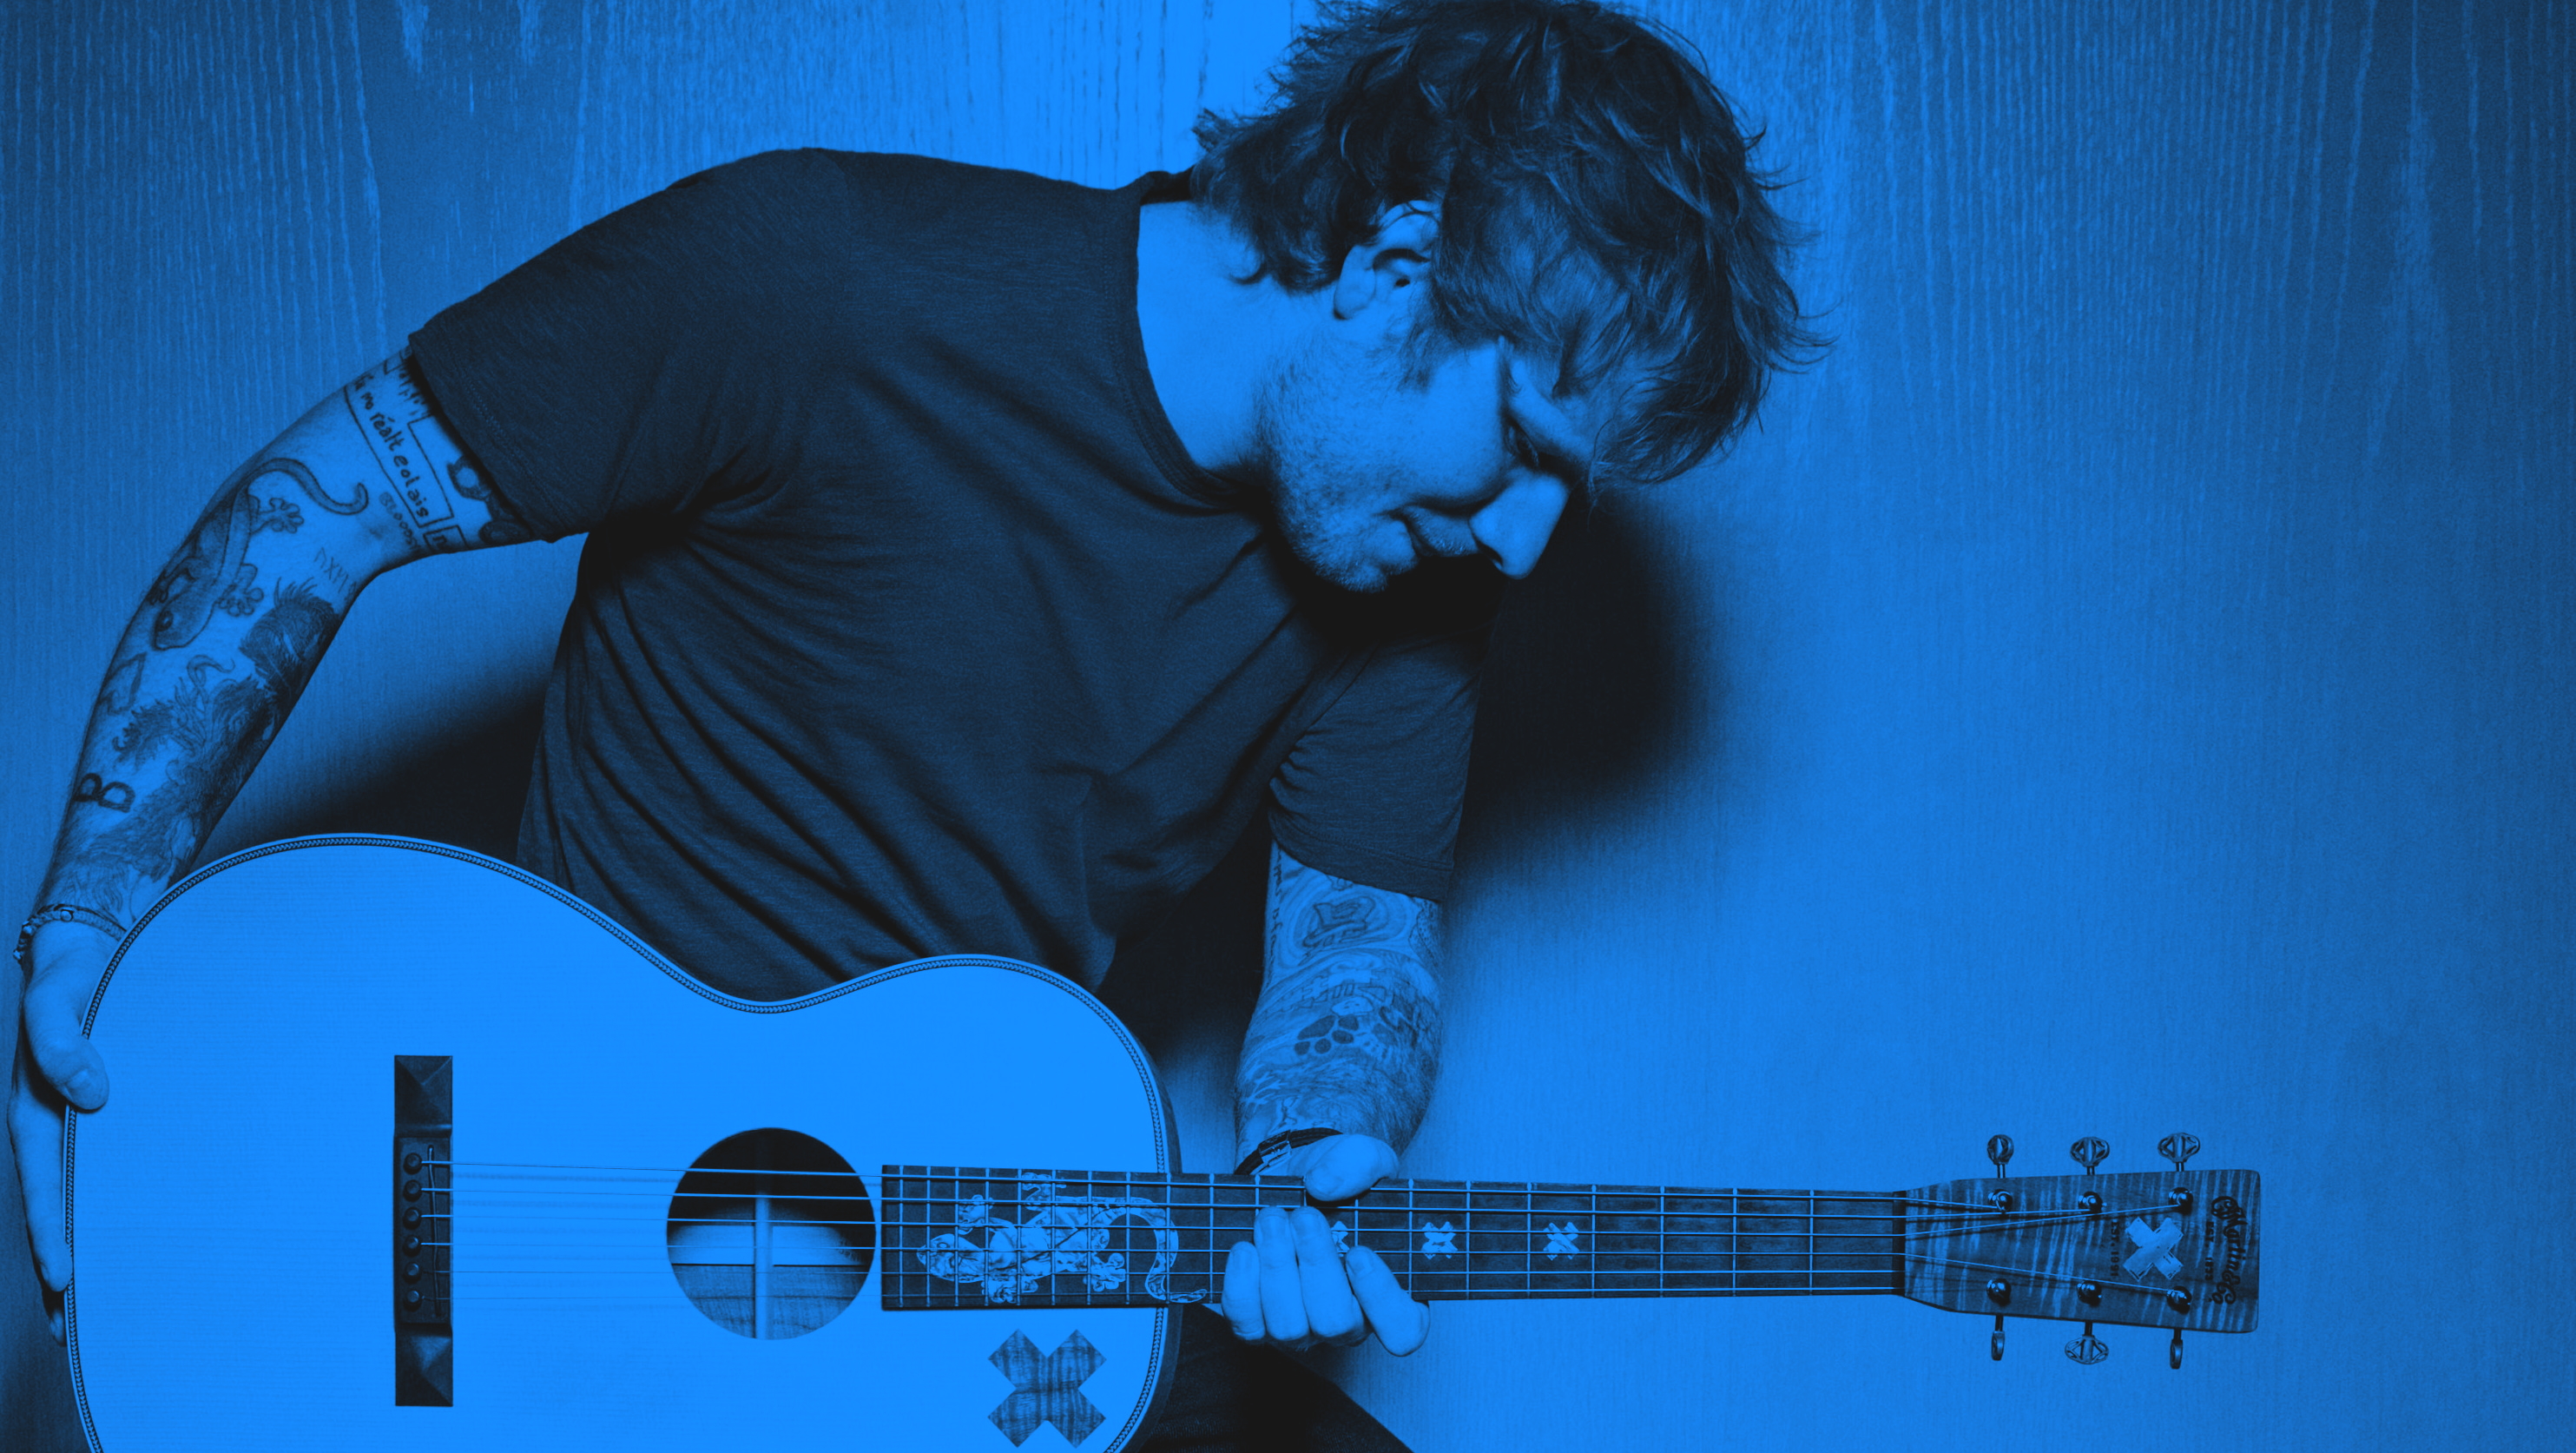 Ed Sheeran Shape Of You , HD Wallpaper & Backgrounds